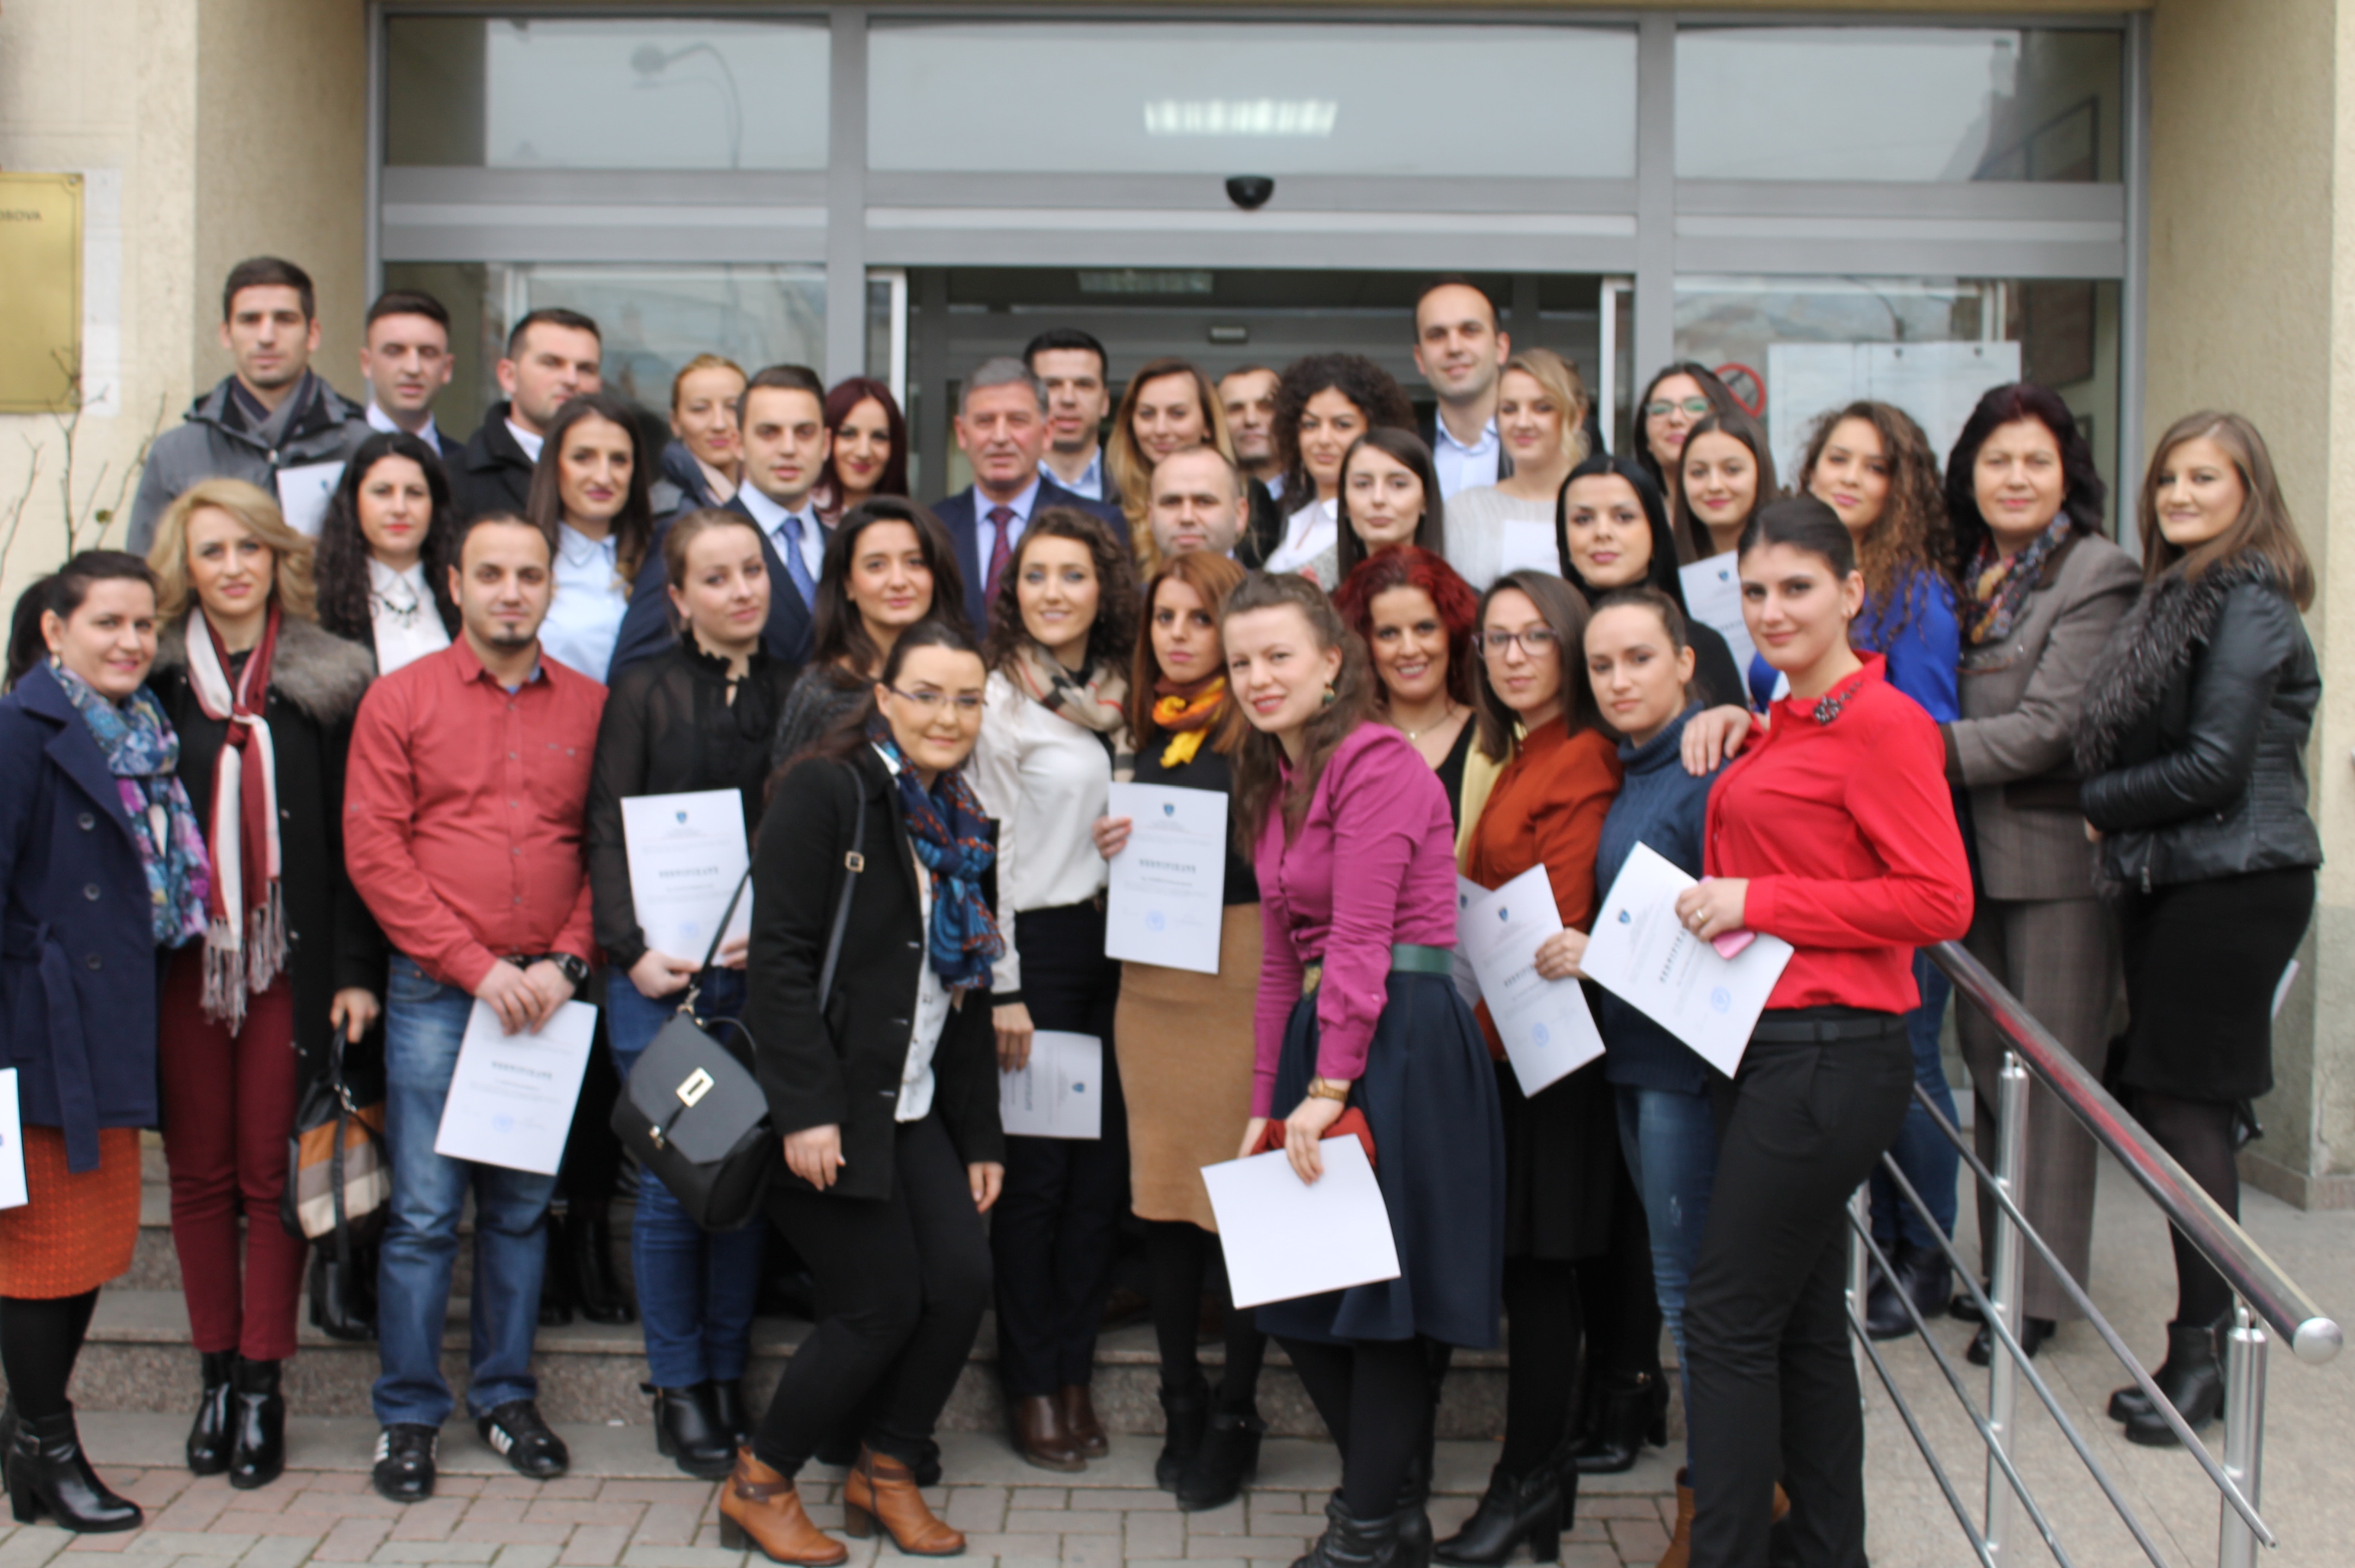 Tridhjetetetë (38) praktikant përfunduan praktikën në GjykatënThemelore të Prizrenit